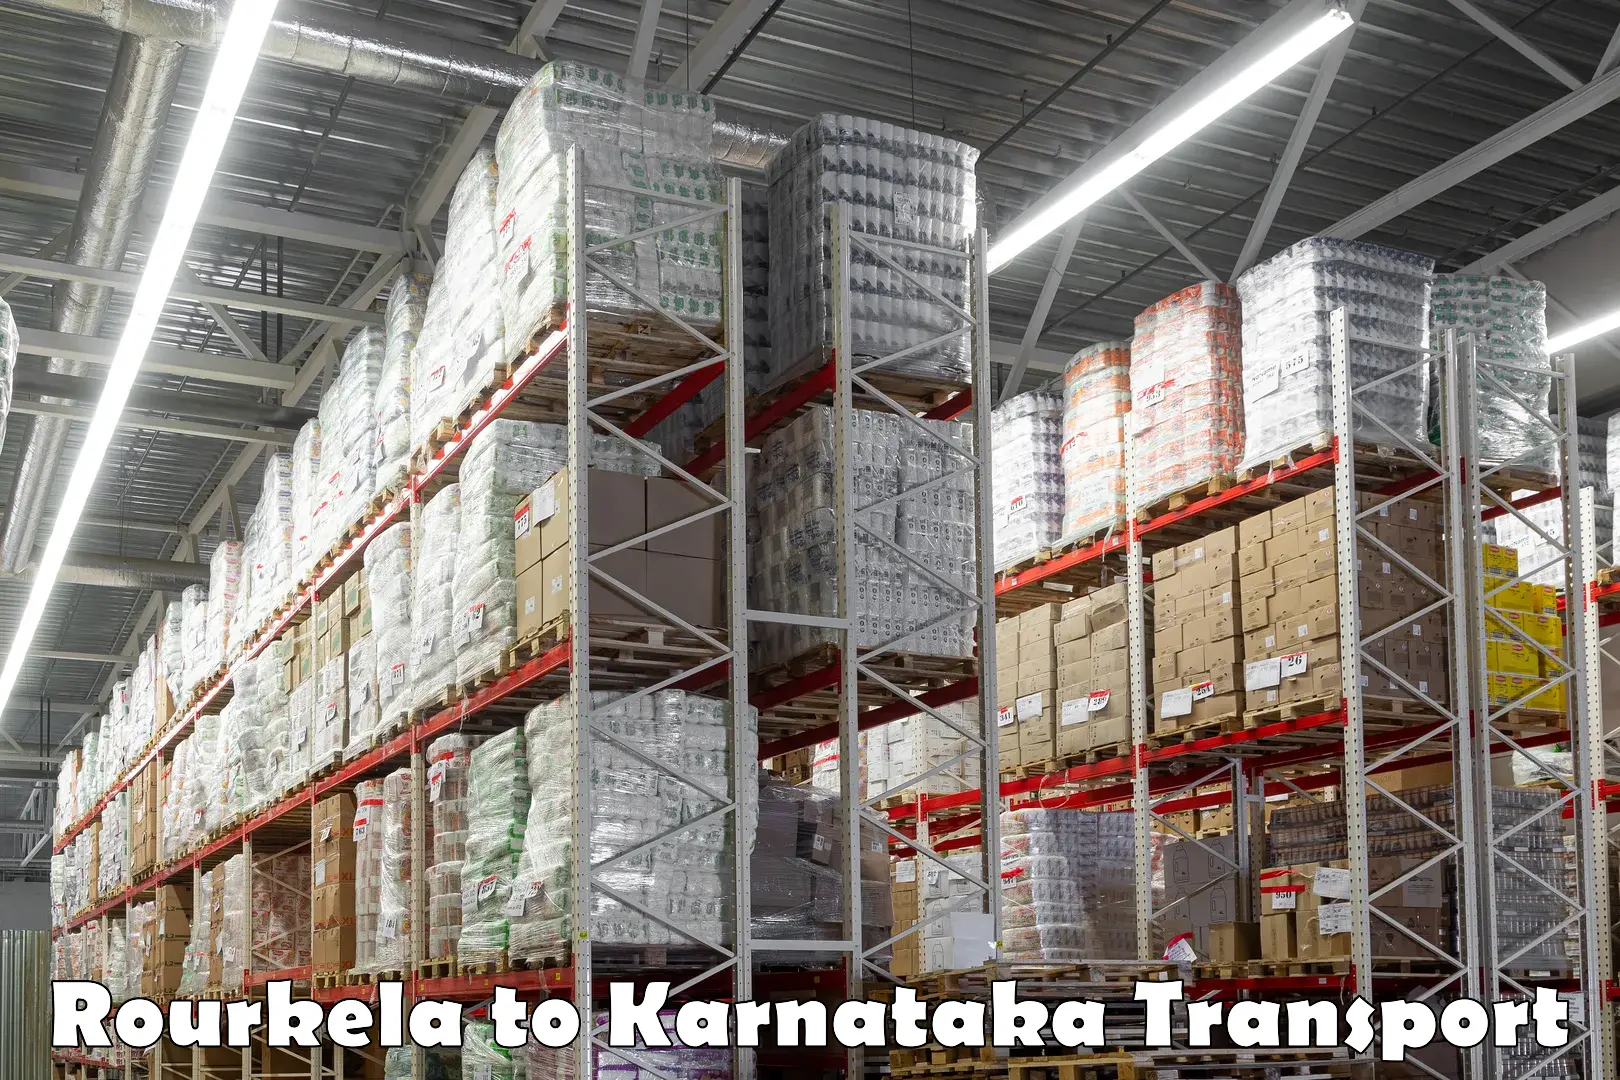 Delivery service Rourkela to Kanjarakatte